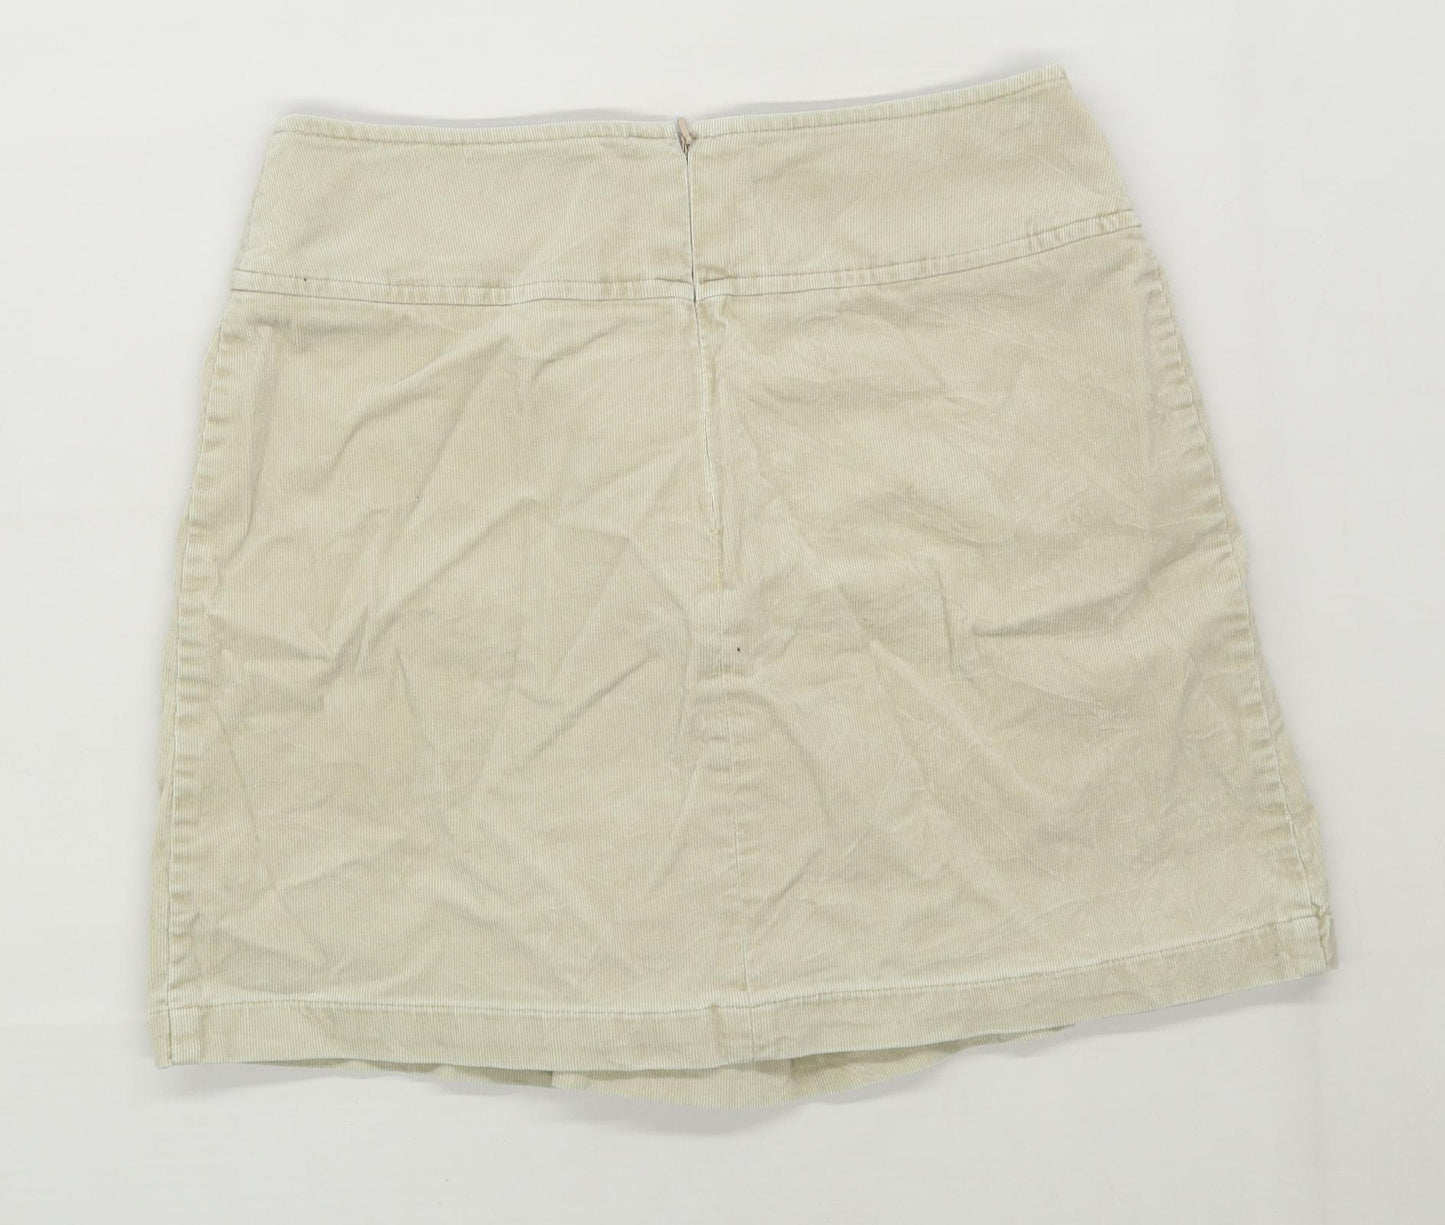 Esprit Womens Size 6 Corduroy Blend Beige Skirt (Regular)